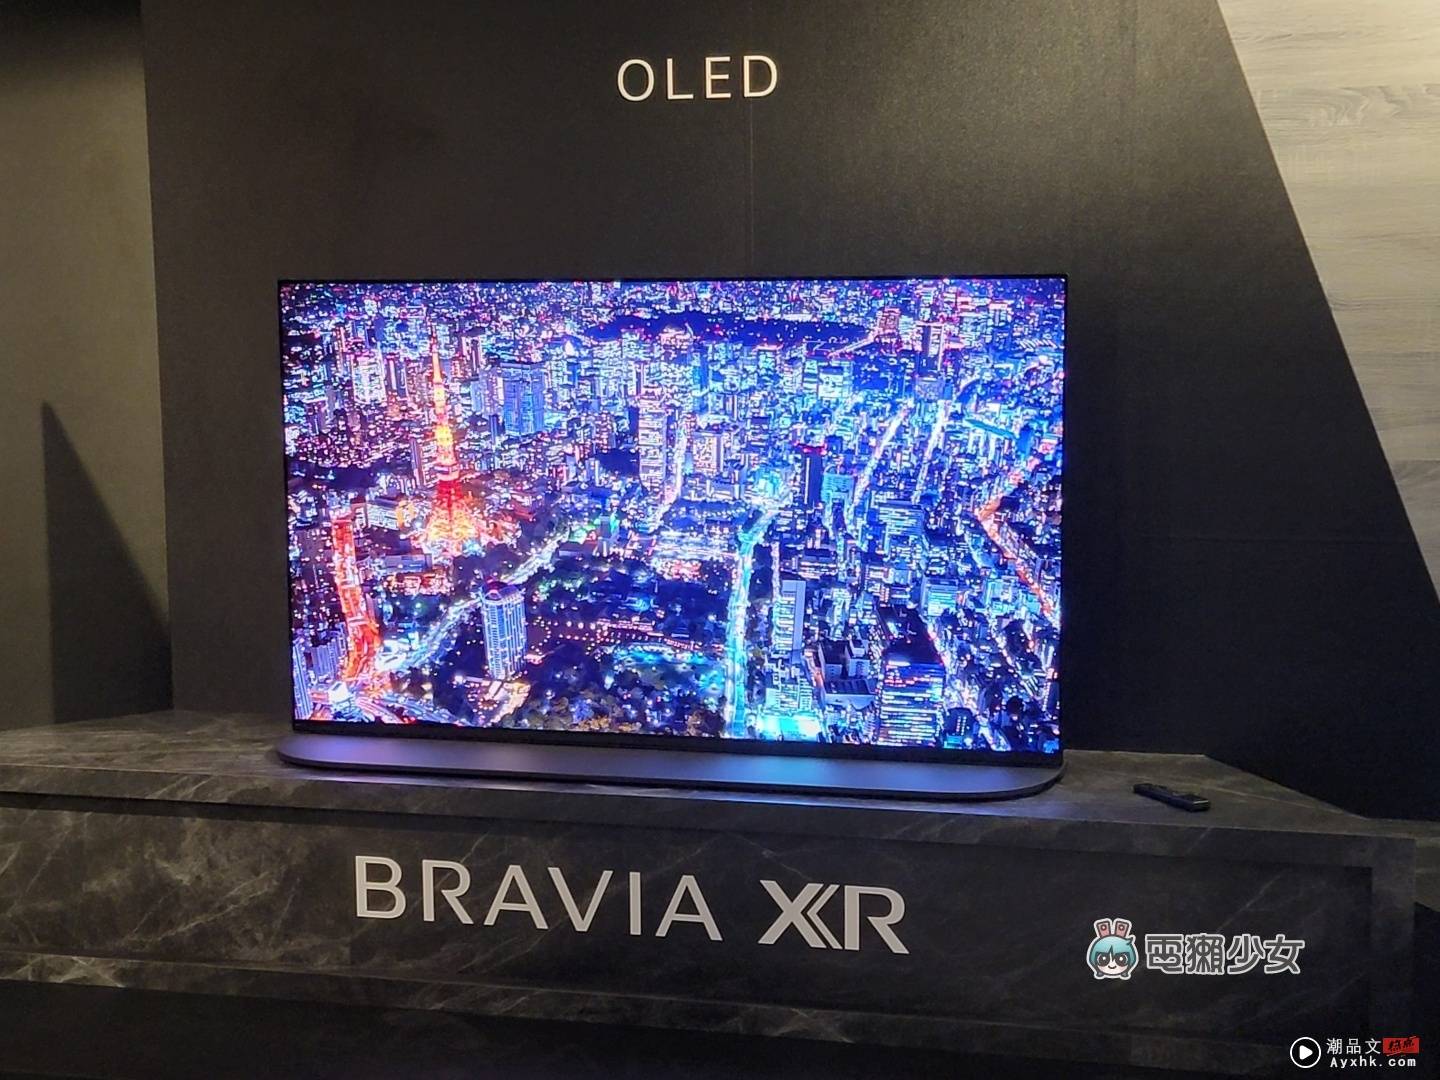 出门｜Sony BRAAIA XR 电视全系列皆为 PS5 推荐机种，体验 OLED、Mini LED 的旗舰级显色 数码科技 图12张